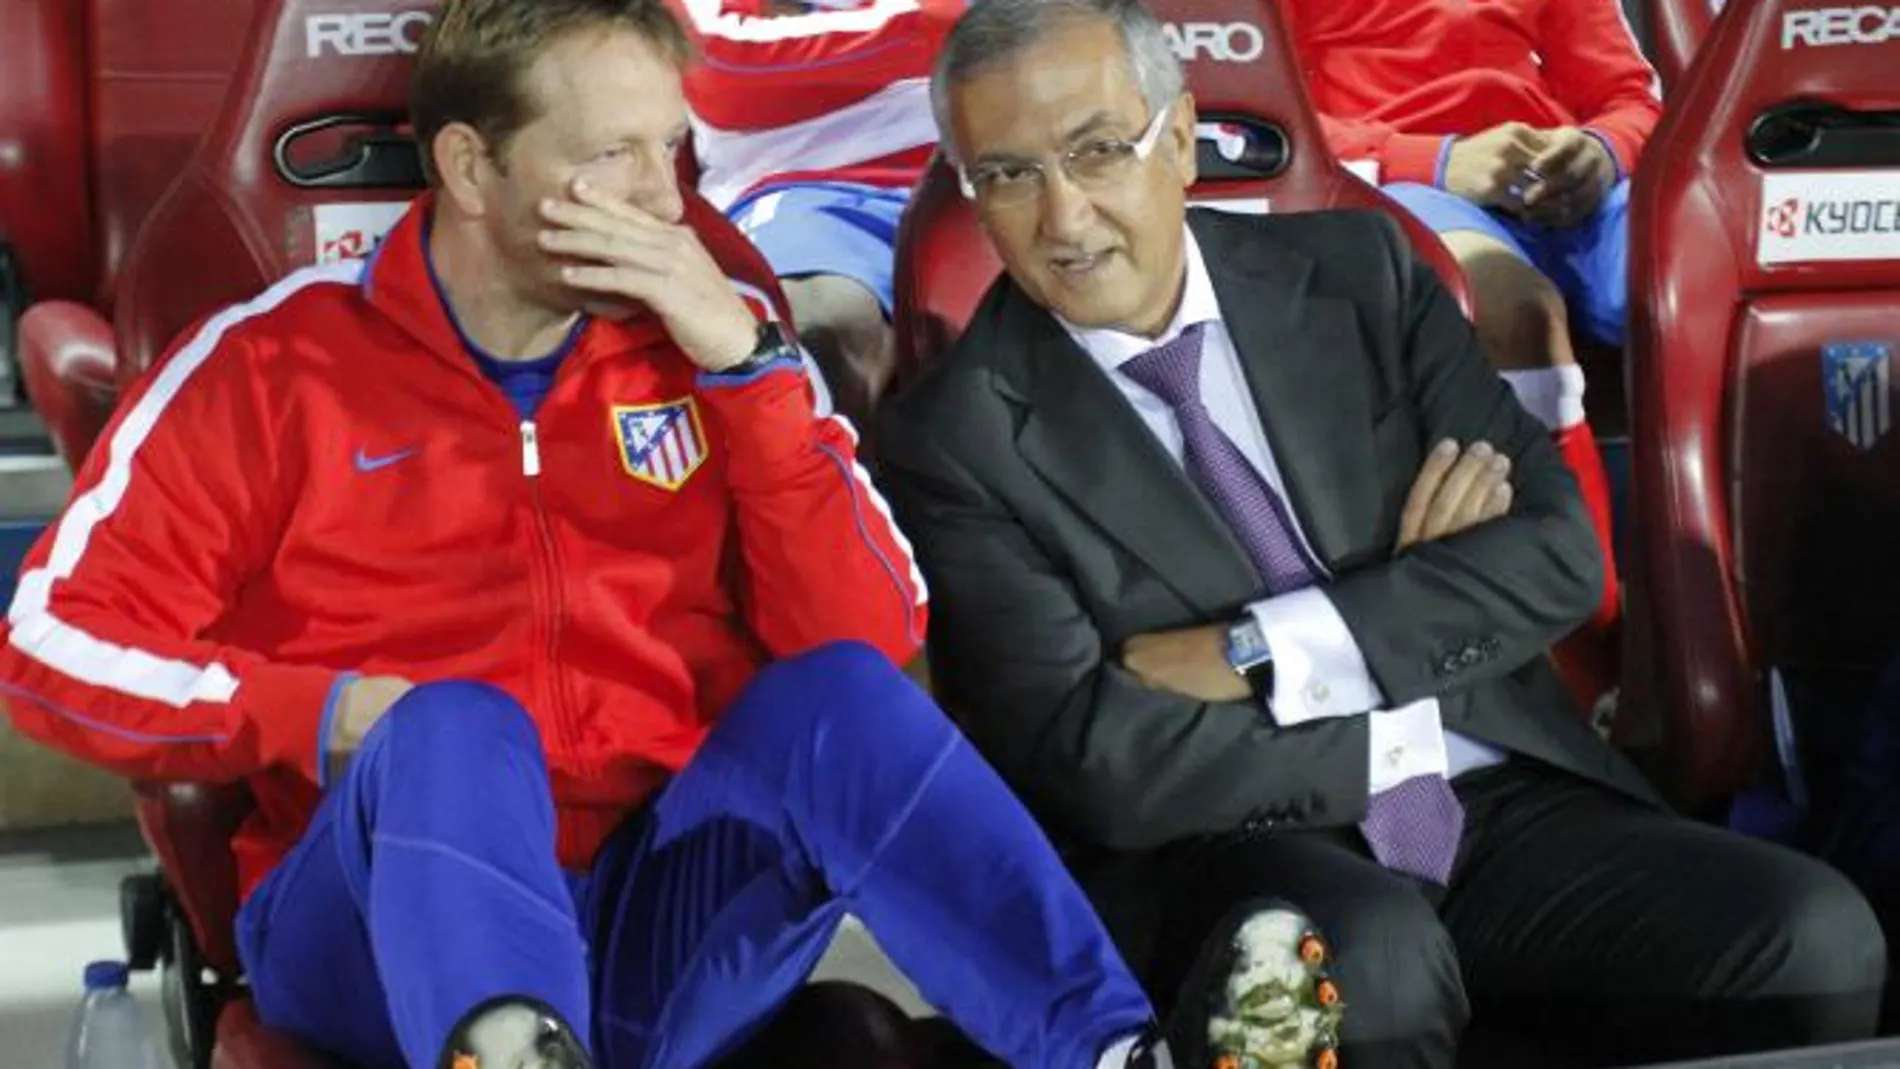 El entrenador del Atlético de Madrid, Gregorio Manzano (d), dialoga con un miembro del cuerpo técnico durante el partido frente al Real Zaragoza